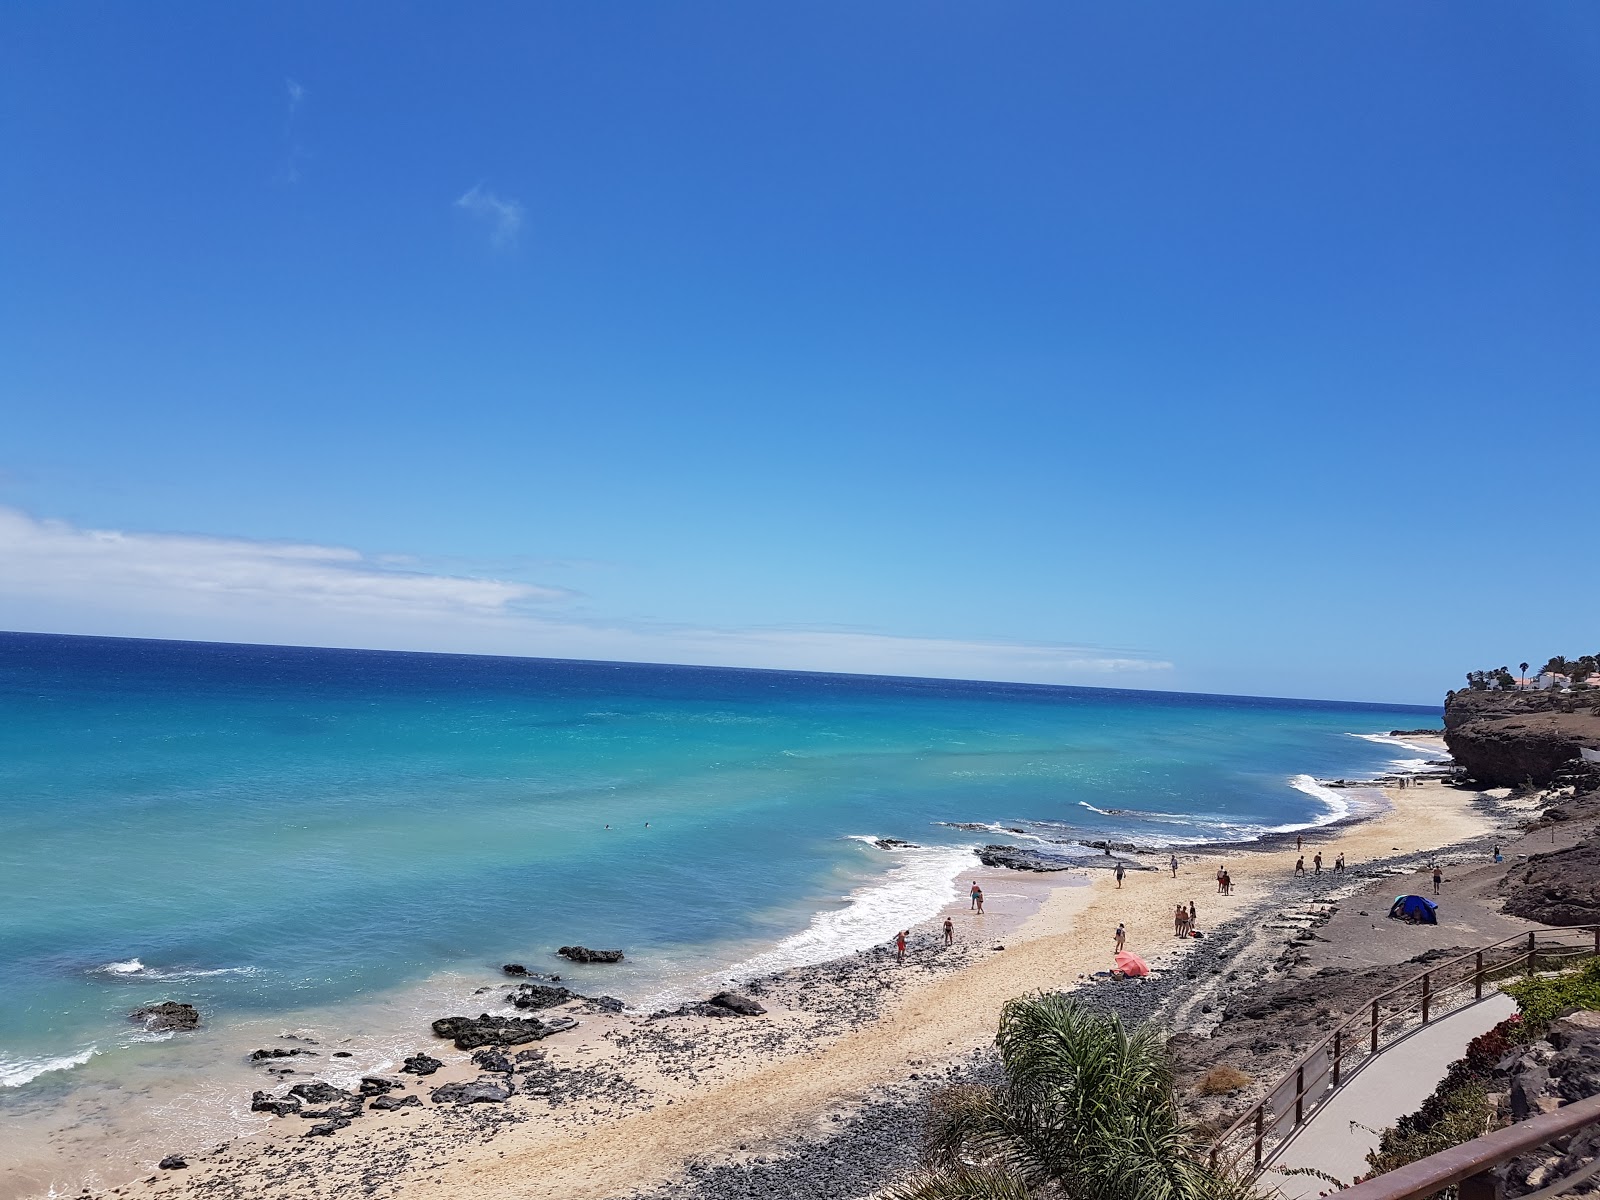 Playa de Butihondo'in fotoğrafı geniş plaj ile birlikte